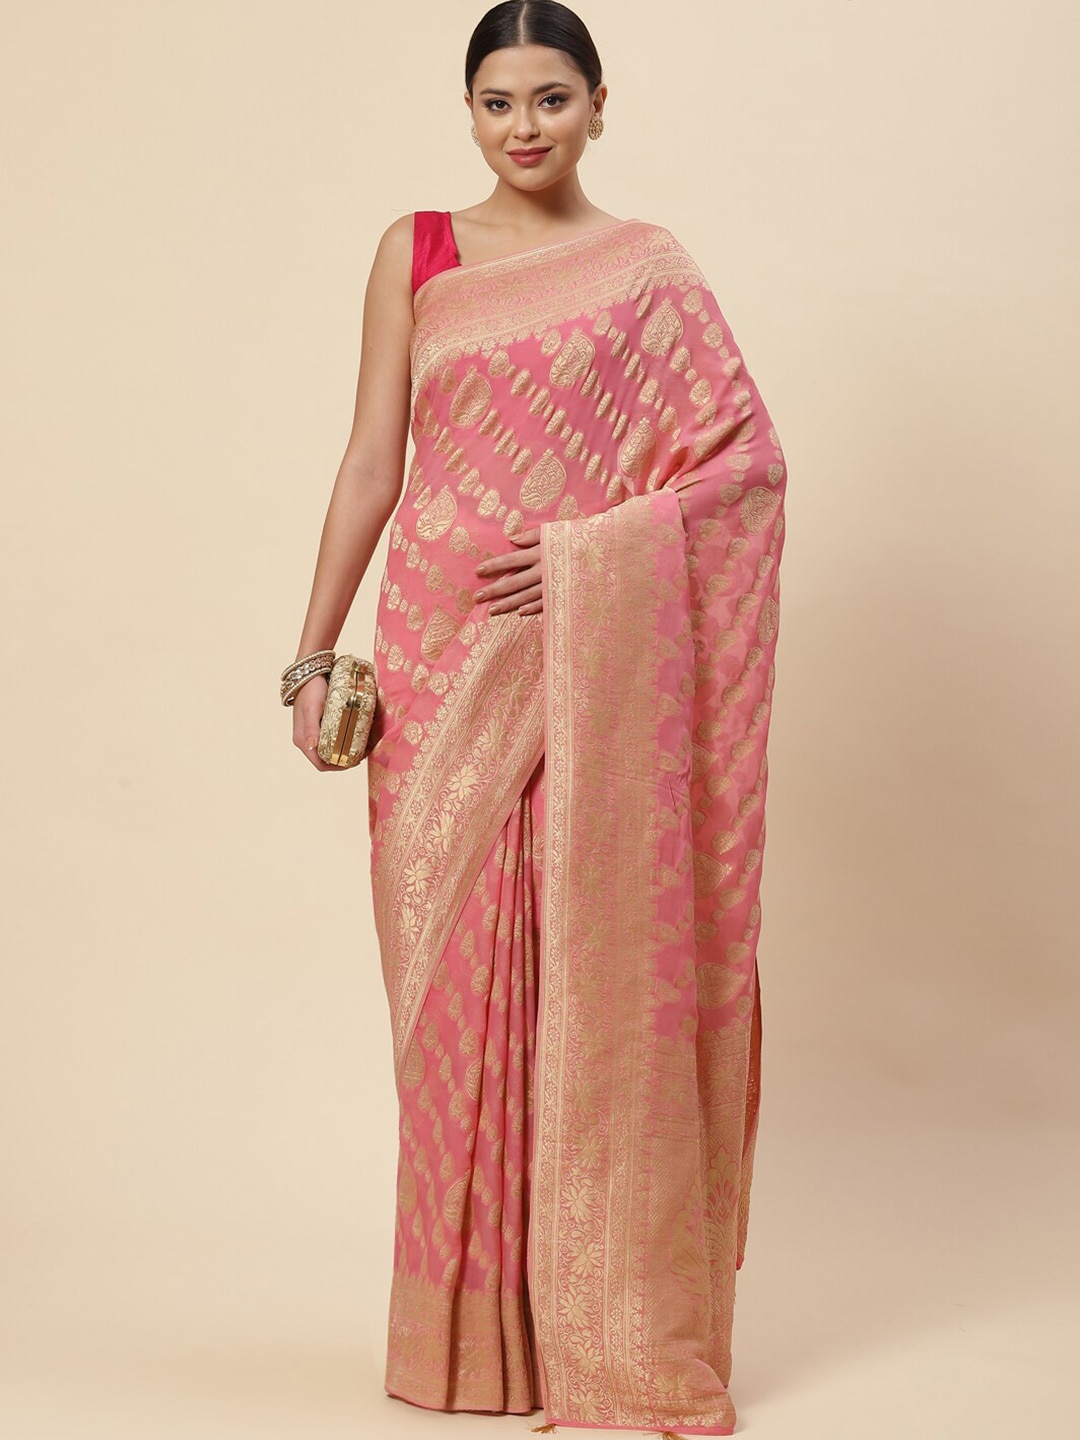 Meena Bazaar Pink & Gold-Toned Ethnic Motifs Zari Saree Price in India